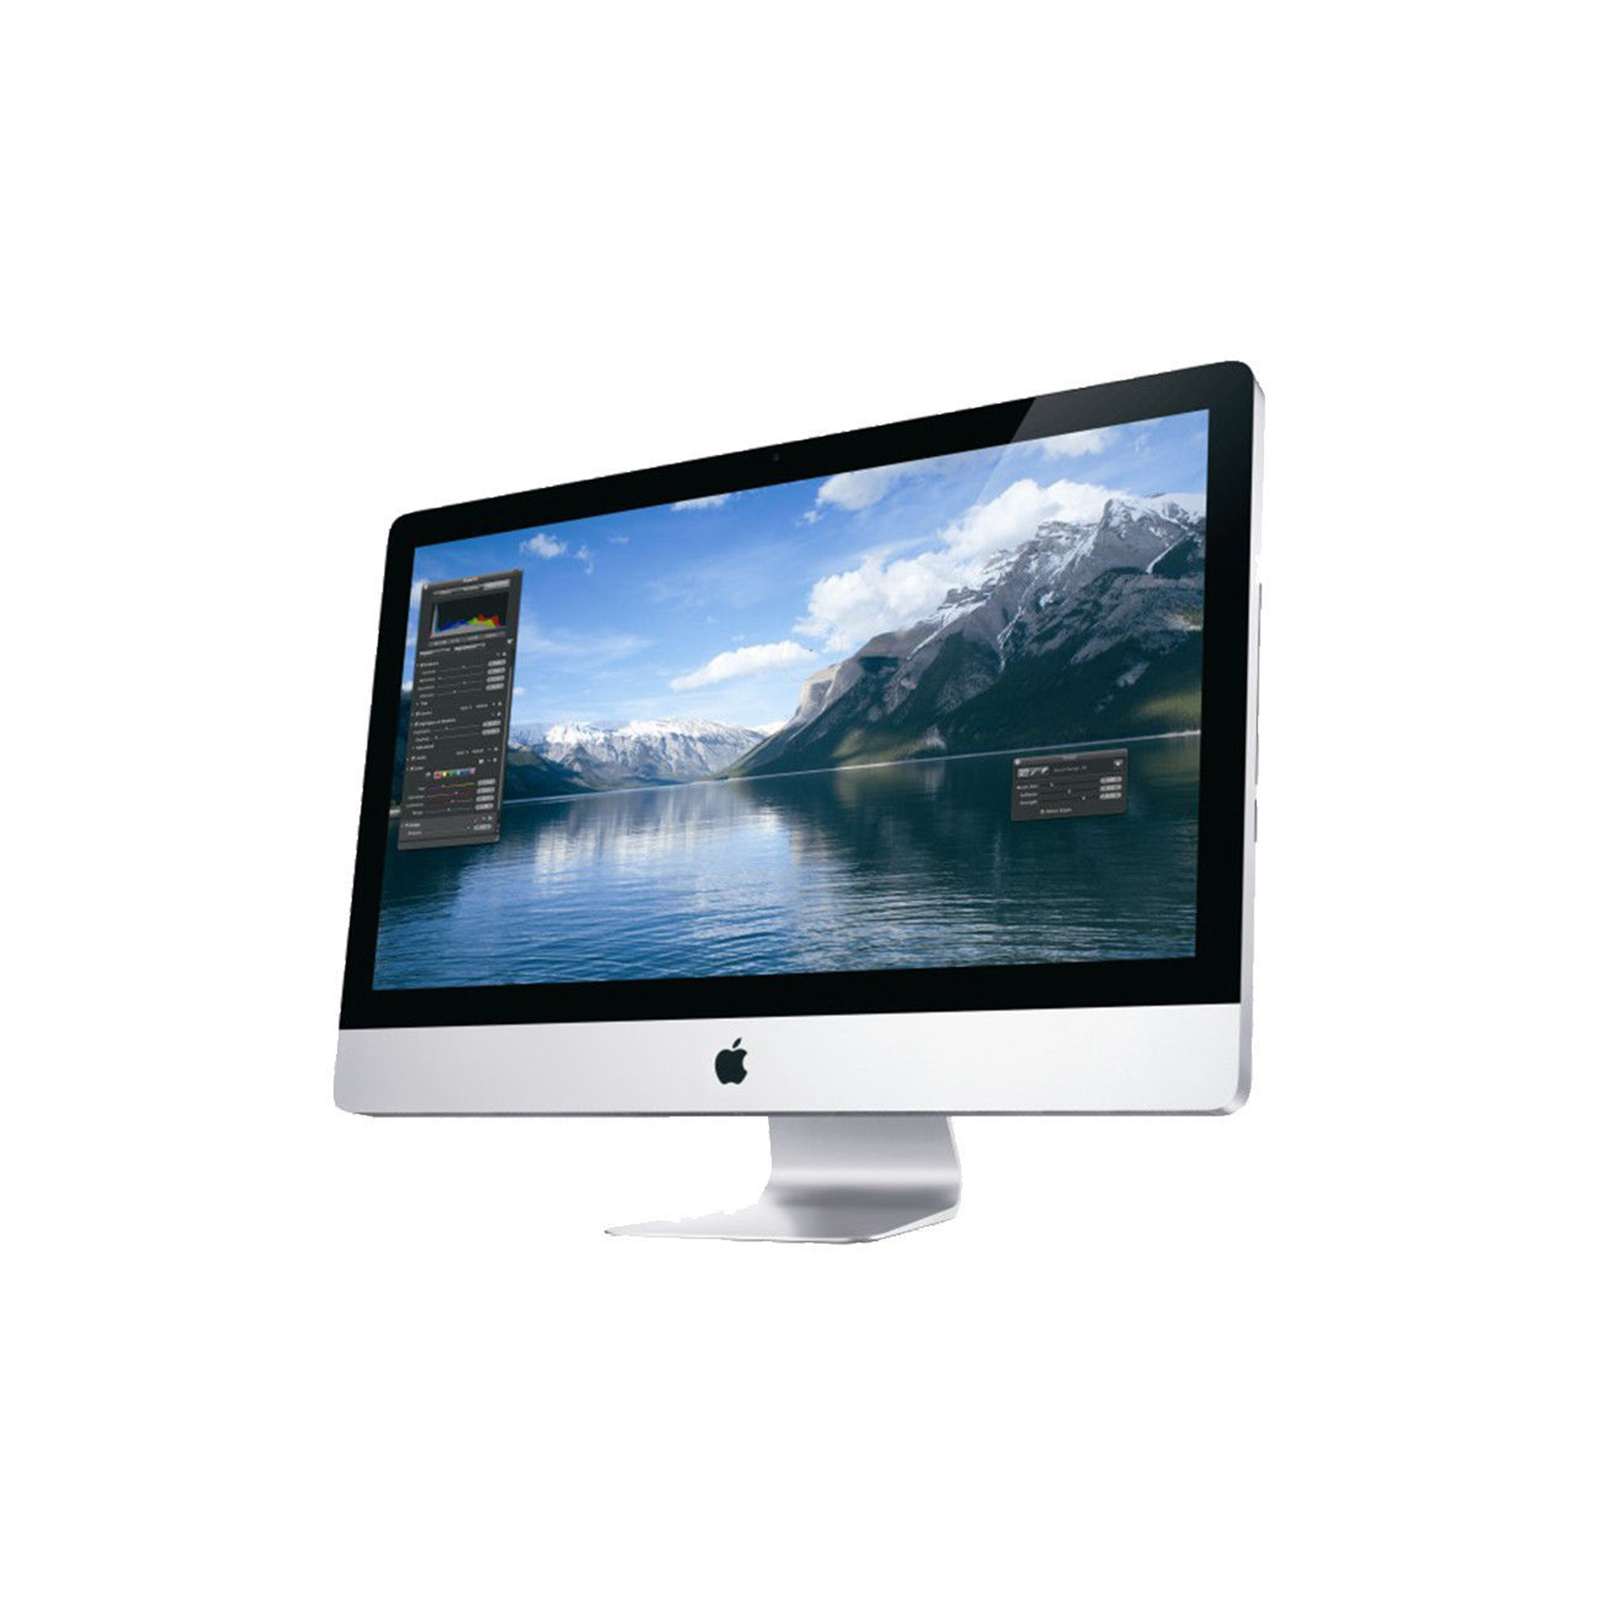 iMac 21.5" Mid 2011 - Core i5 2.7Ghz / 12GB RAM / 1TB HDD / 6750M 512MB GPU